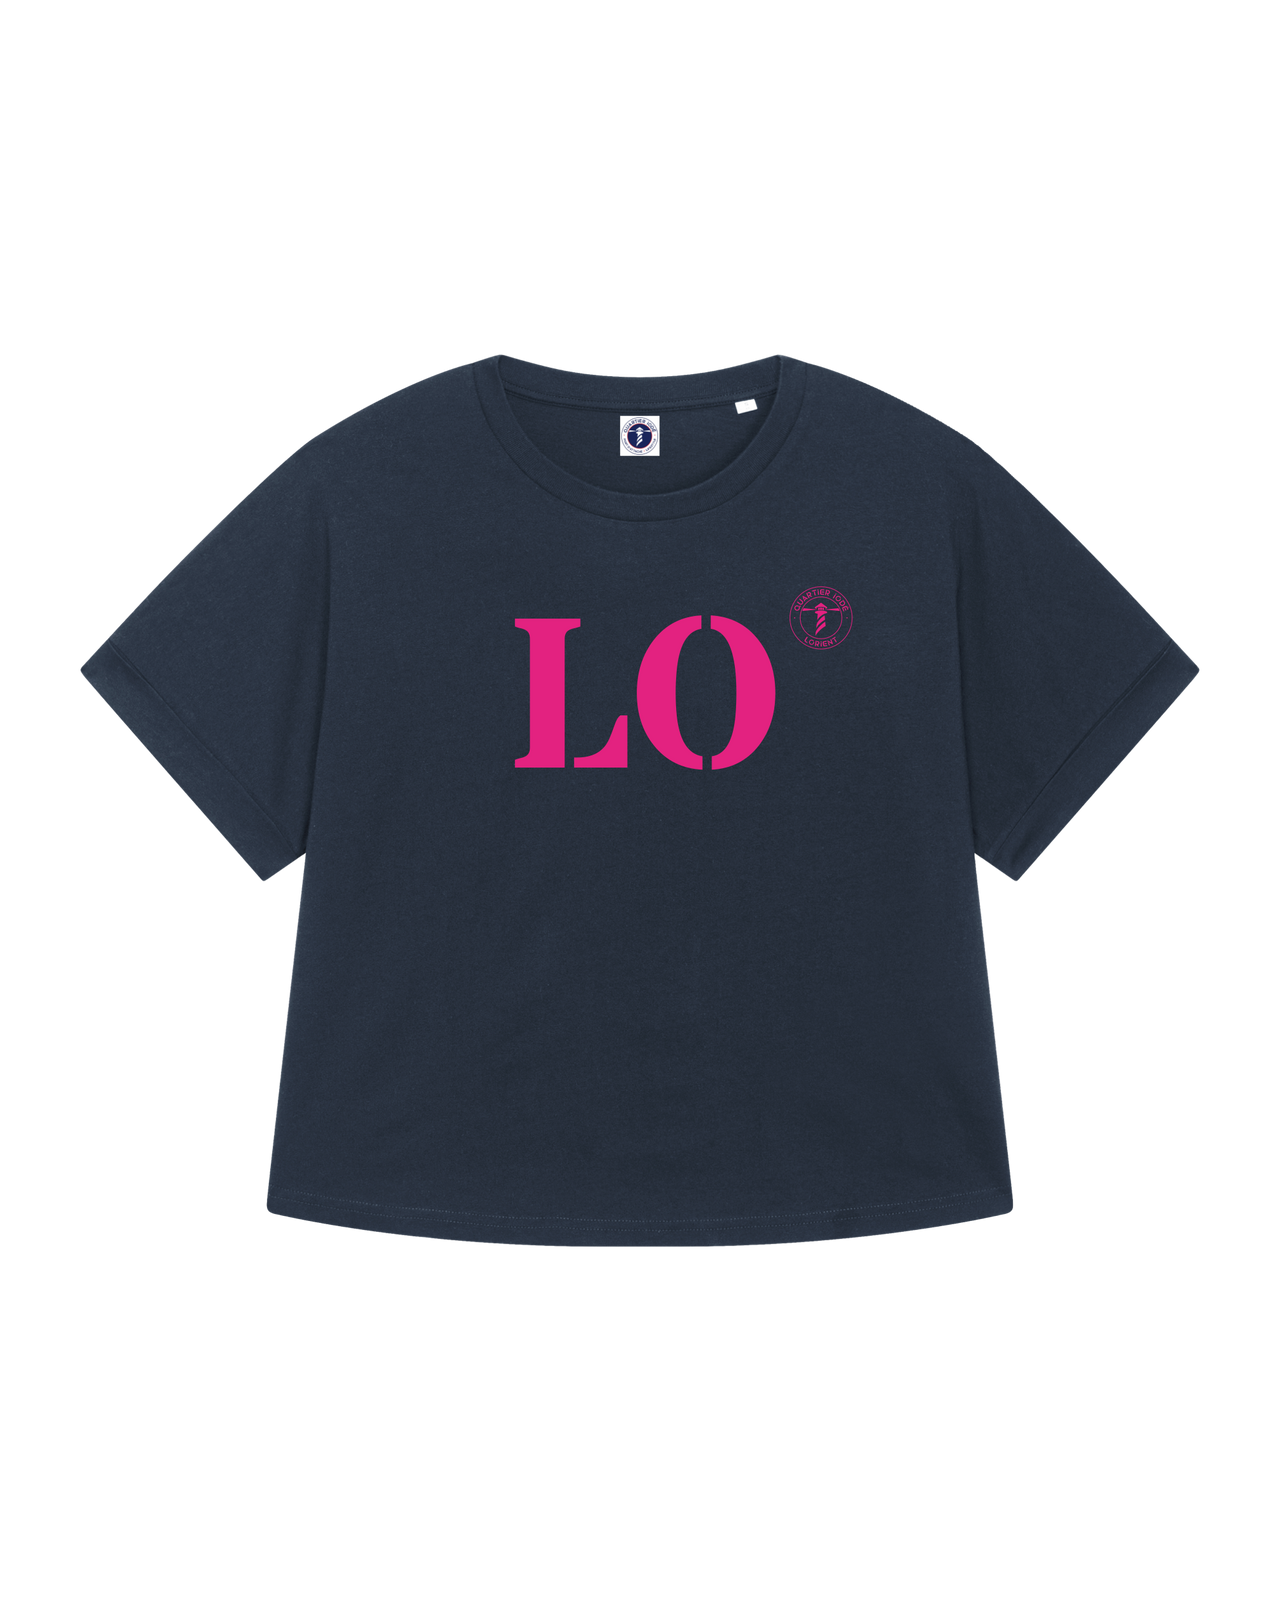 Tshirt Oversize breizh, de la marque bretonne Quartier iodé. Imprimé LO pour Lorient. Idéal pour femme, style chic décontracté.